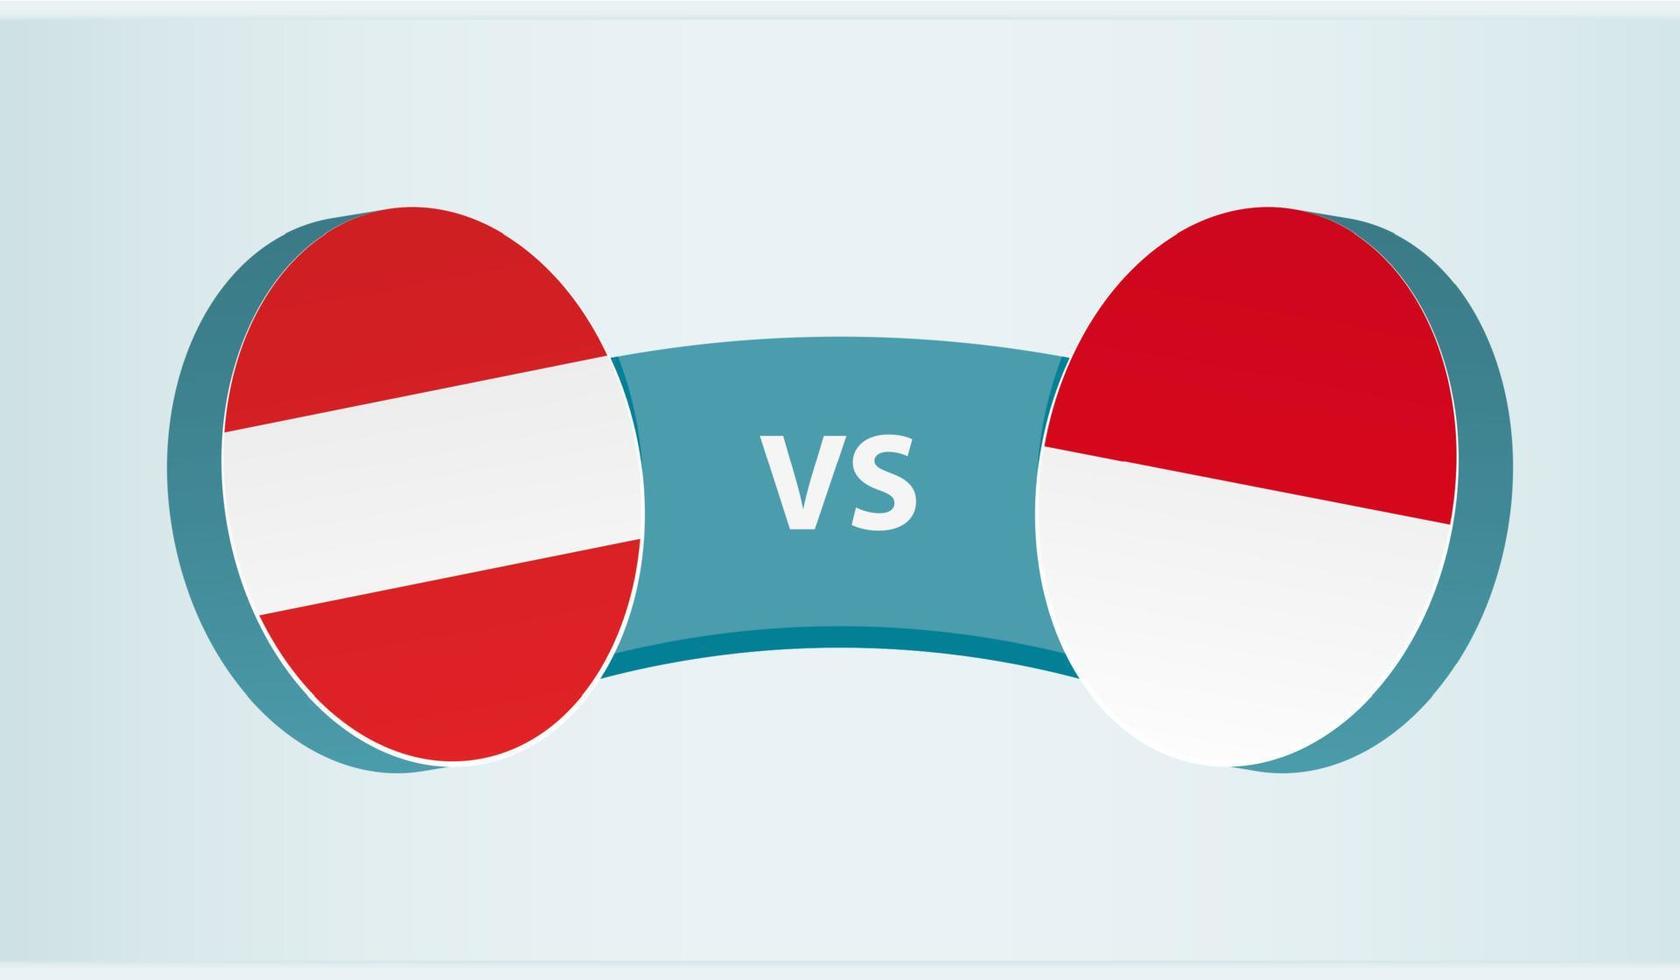 Austria versus Indonesia, team sports competition concept. vector